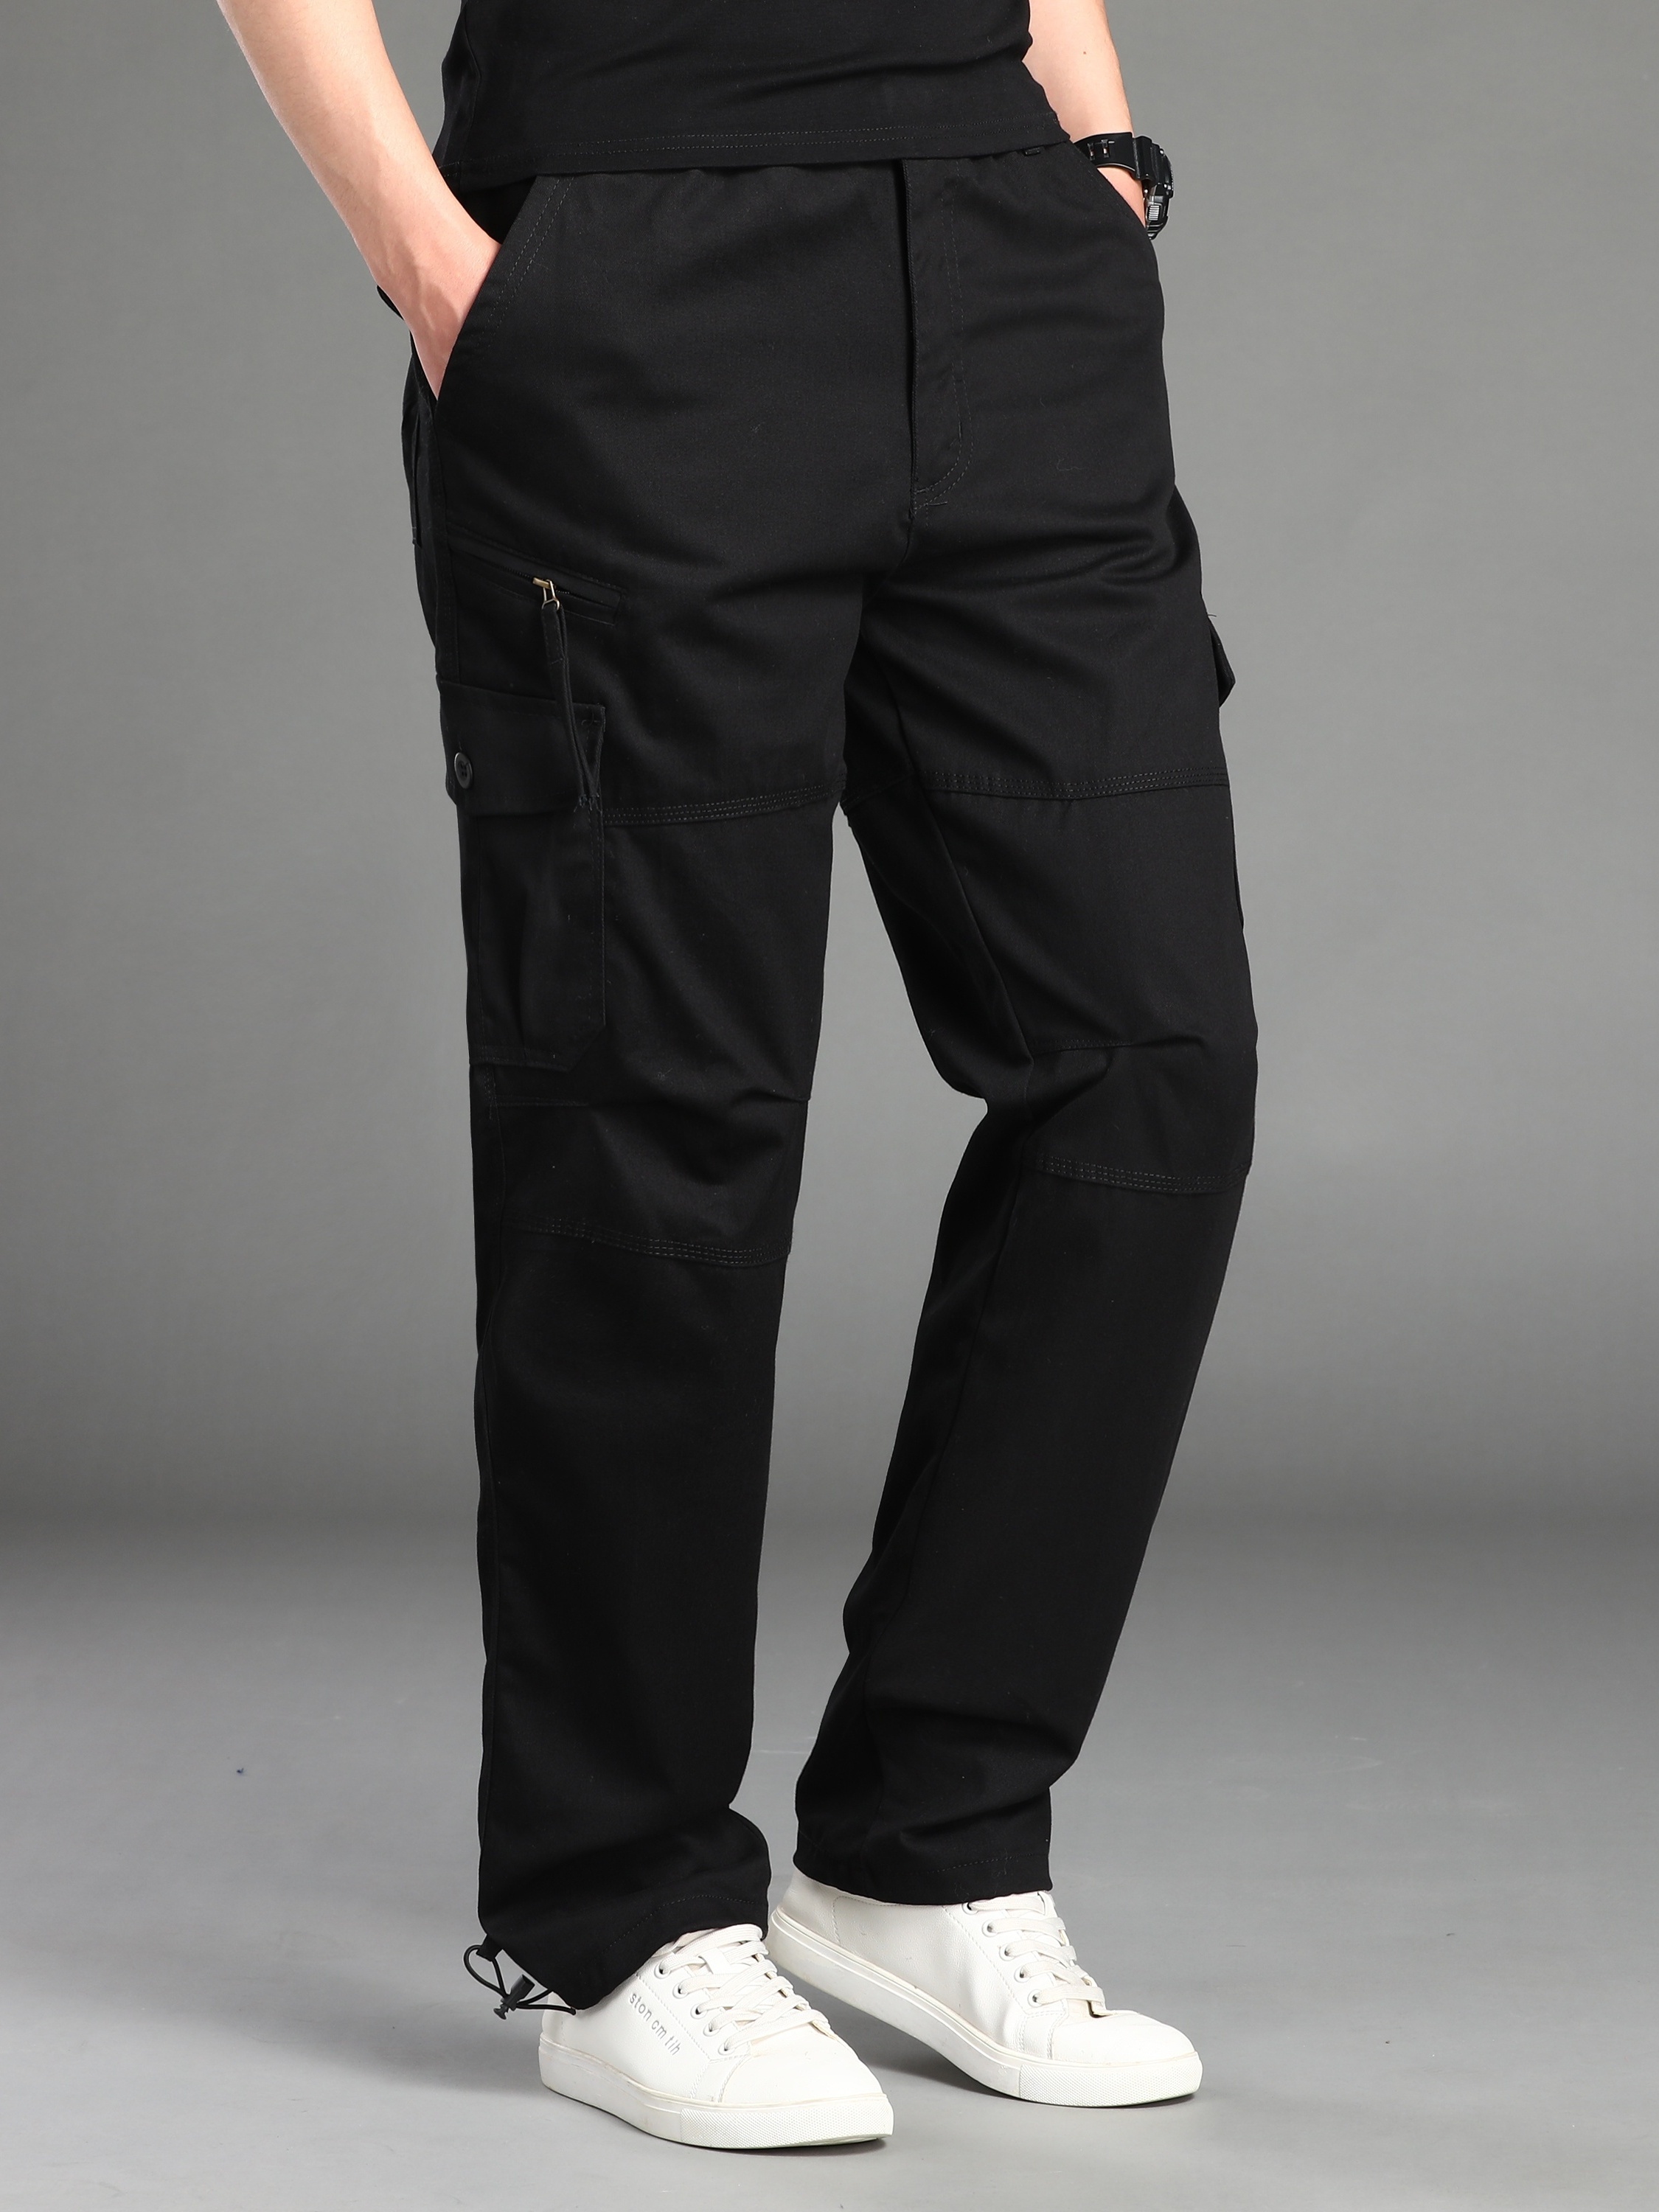 Pantalones Cargo con bolsillos Hombre pantalón Largo LISO Cintura elástica  rectos sueltos USO diario y vacaciones